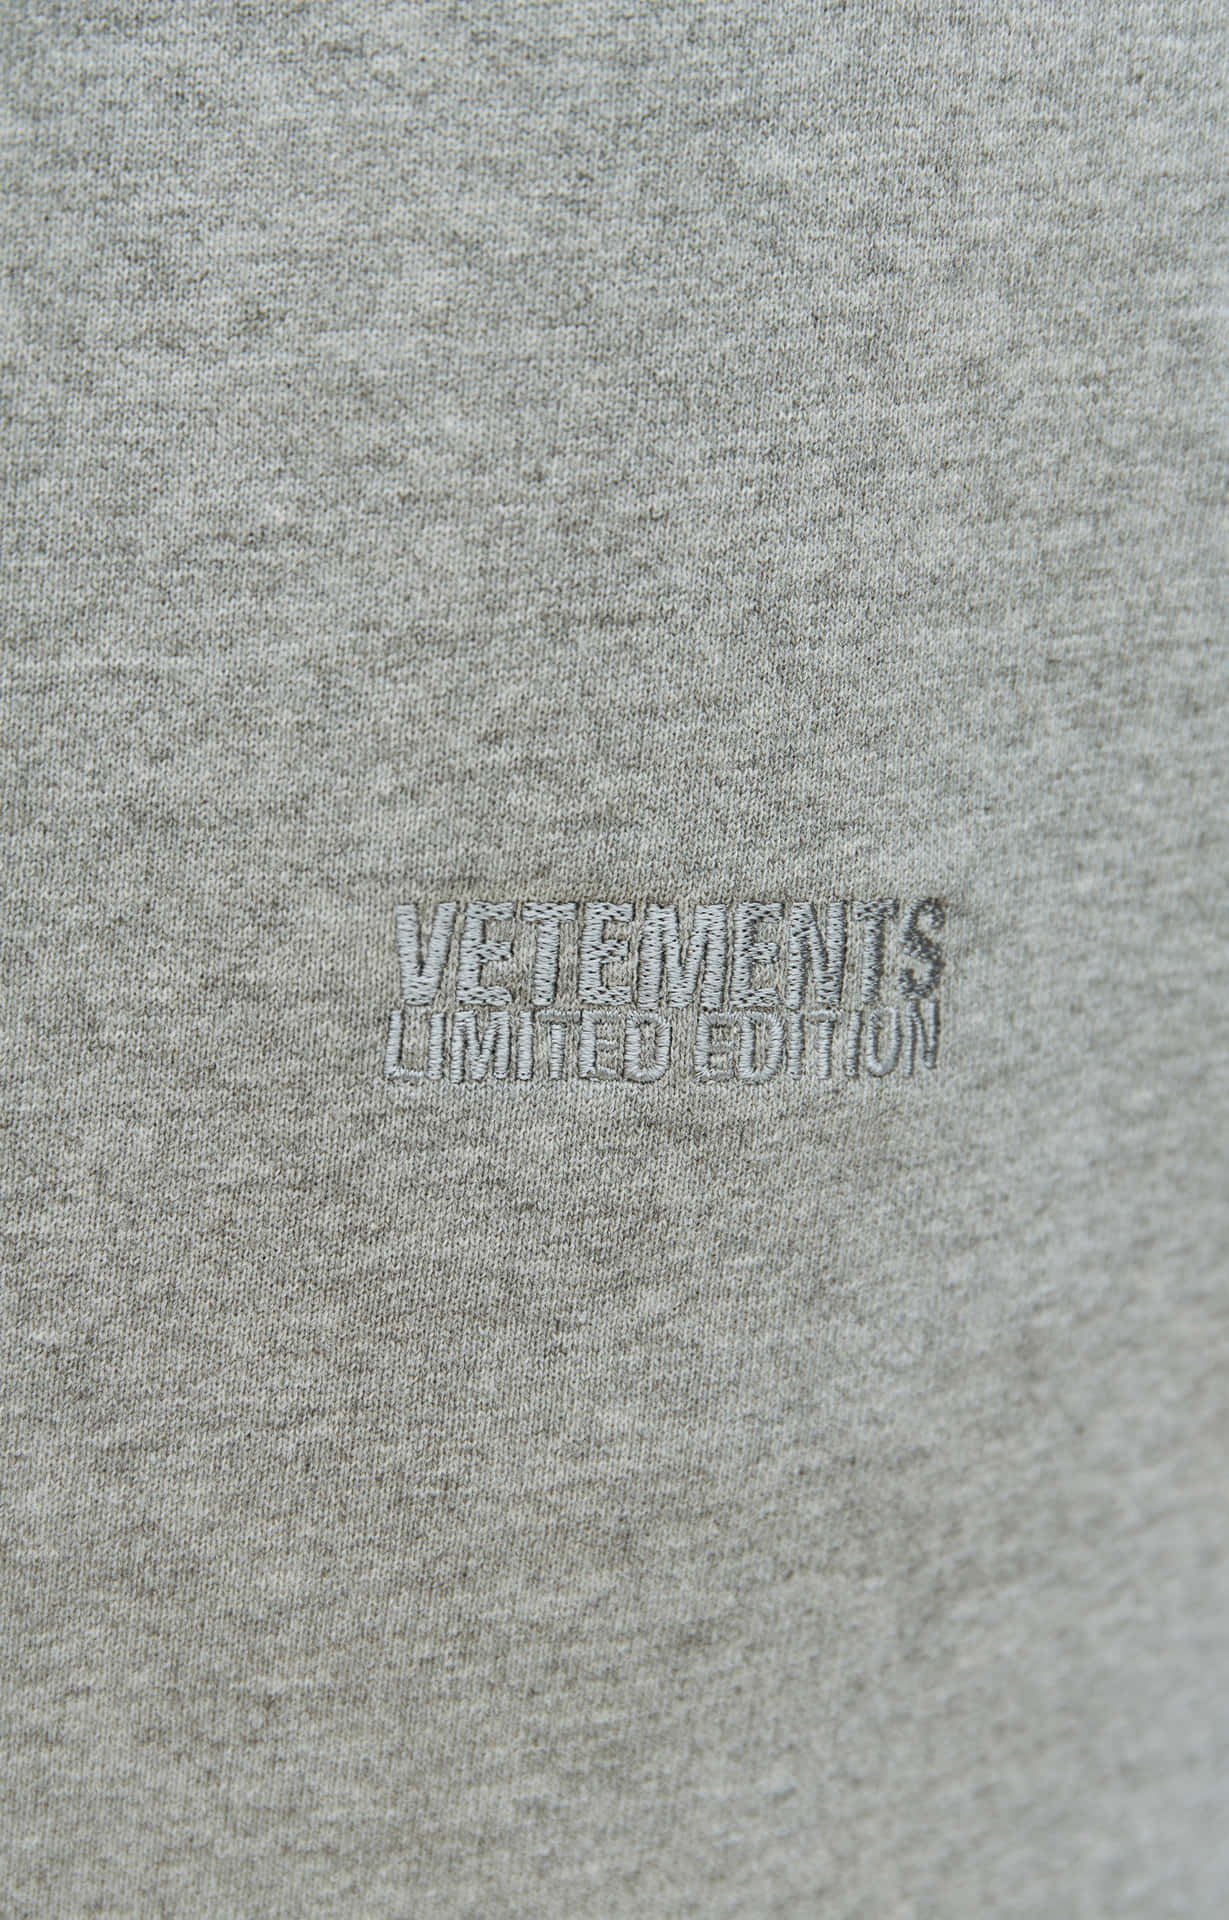 Download Vetements Background | Wallpapers.com